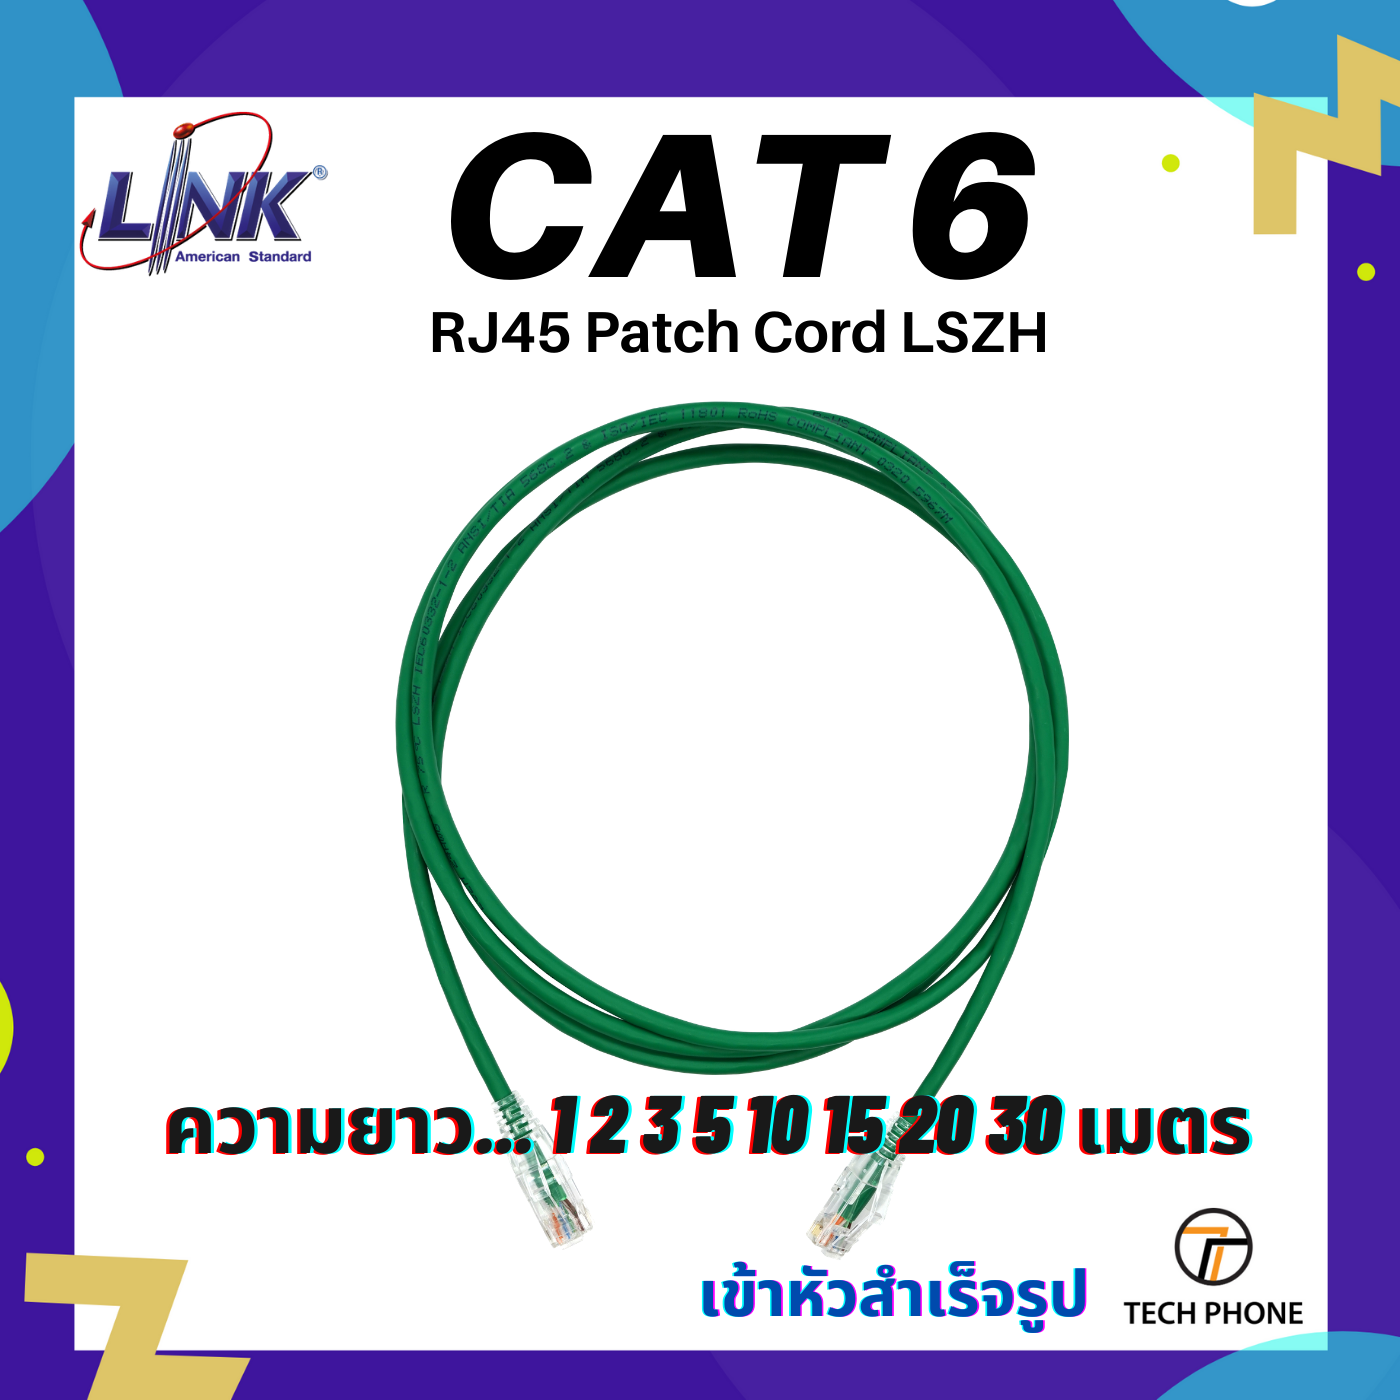 สายแลน LINK CAT 6 Lan Cable ยาว 1 2 3 5 10 15 20 30 40 เมตร เข้าหัวสำเร็จรูป สี ฟ้า แดง ขาว เหลือง เขียว Lan Cable RJ45 Patch Cord LSZH Lan Cable